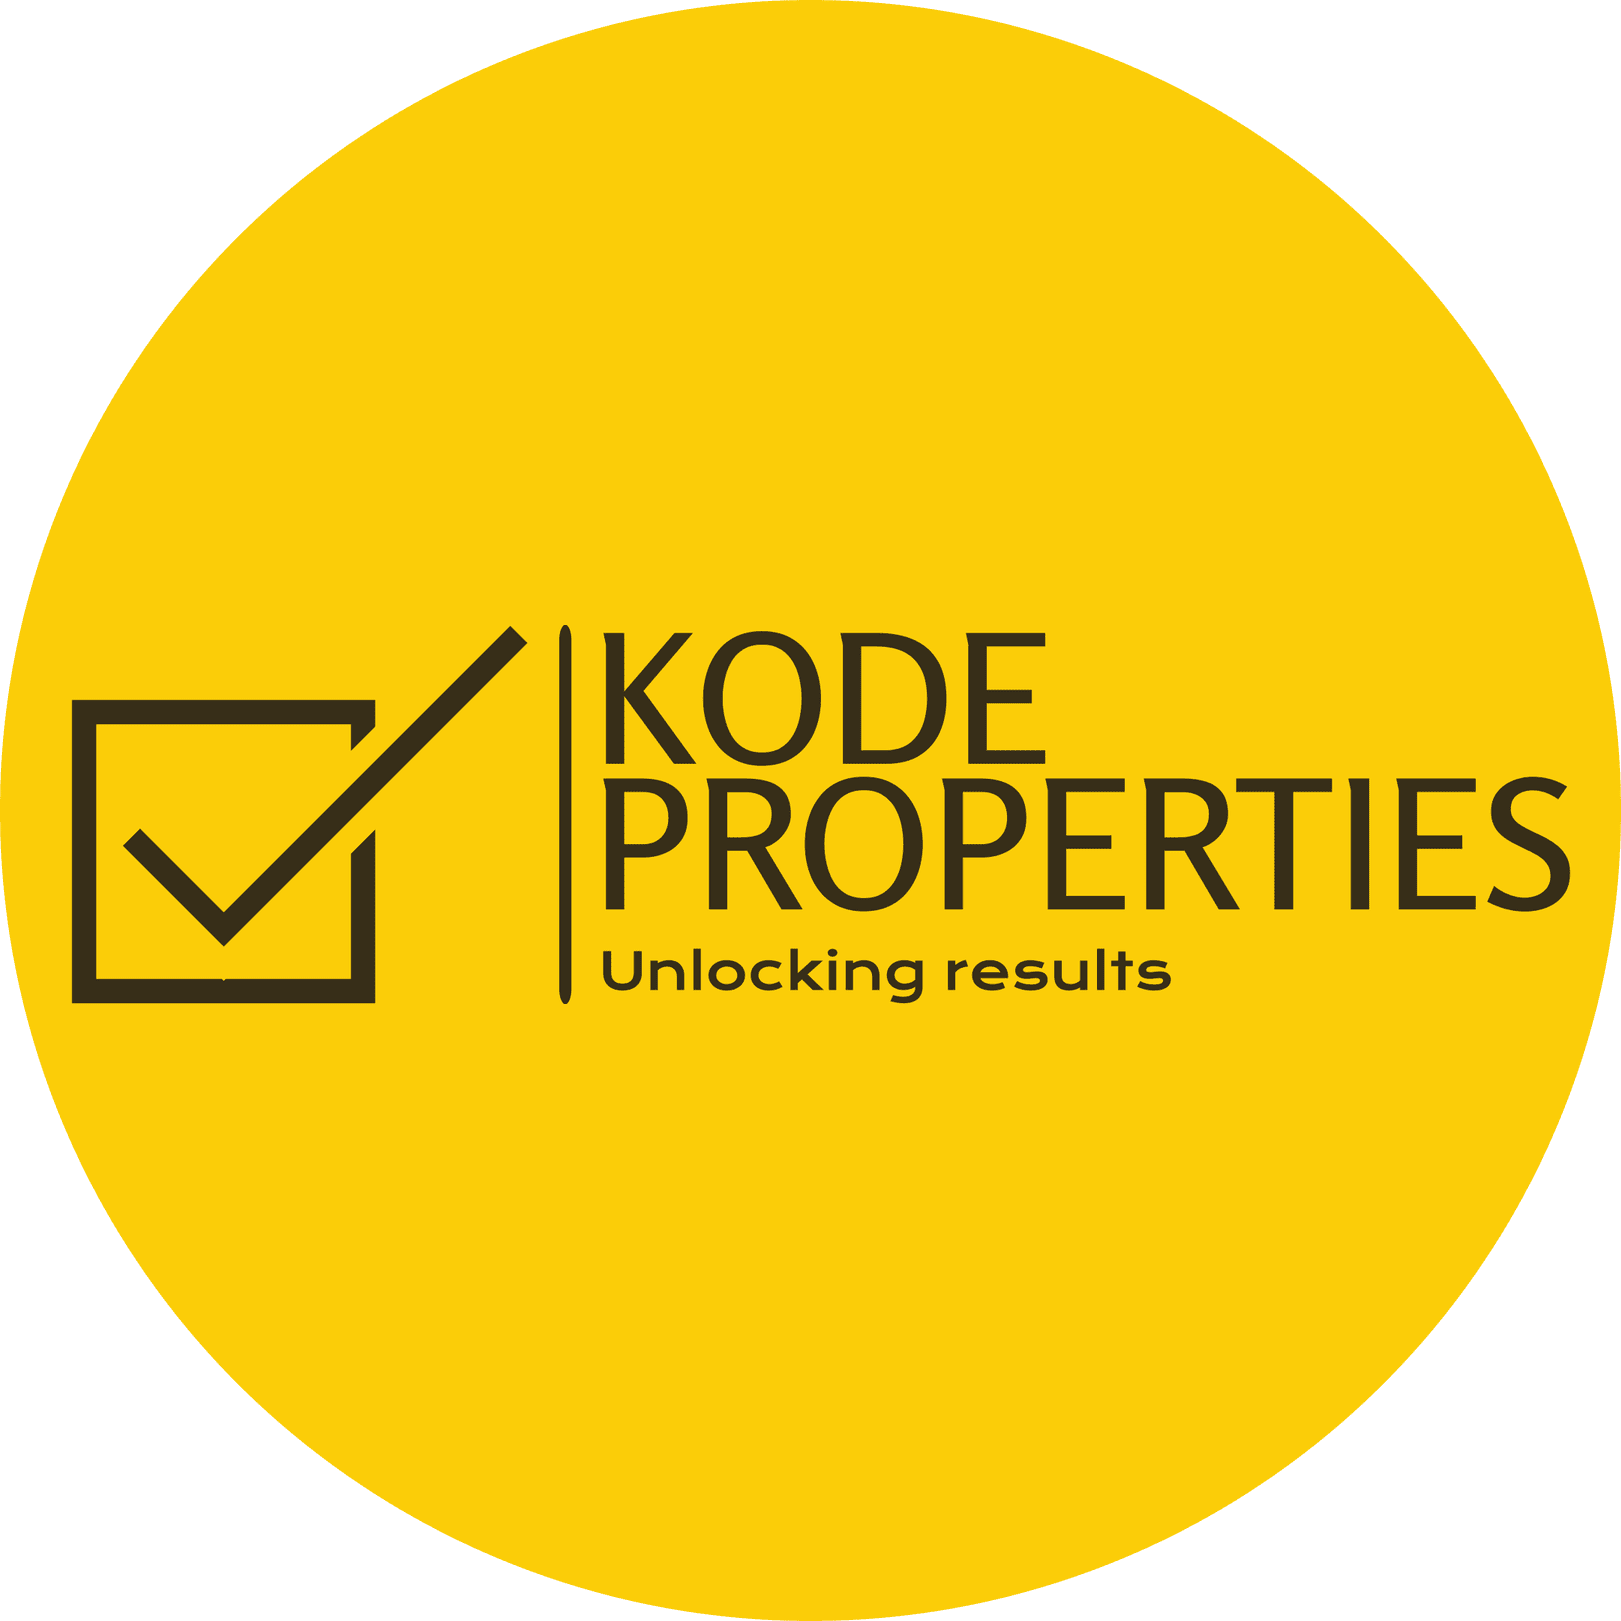 Kode Properties